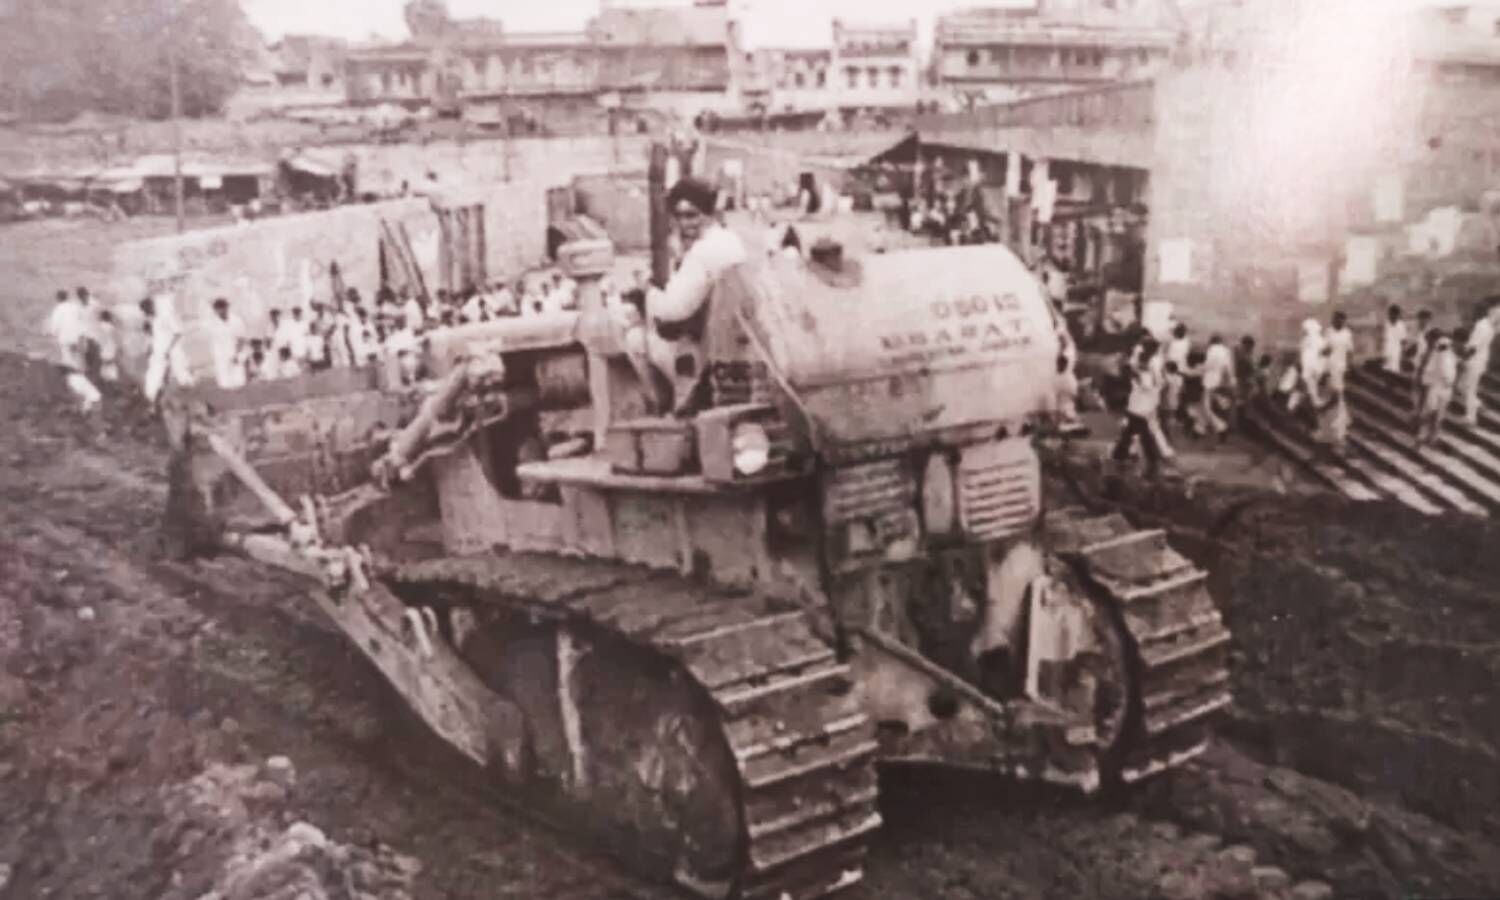 Delhi Bulldozer News : 46 साल पहले जब  कांग्रेस सरकार के  बुल्डोजरों ने दिल्ली के तुर्कमान गेट पर बरपाया था कहर, जानिए पूरी कहानी